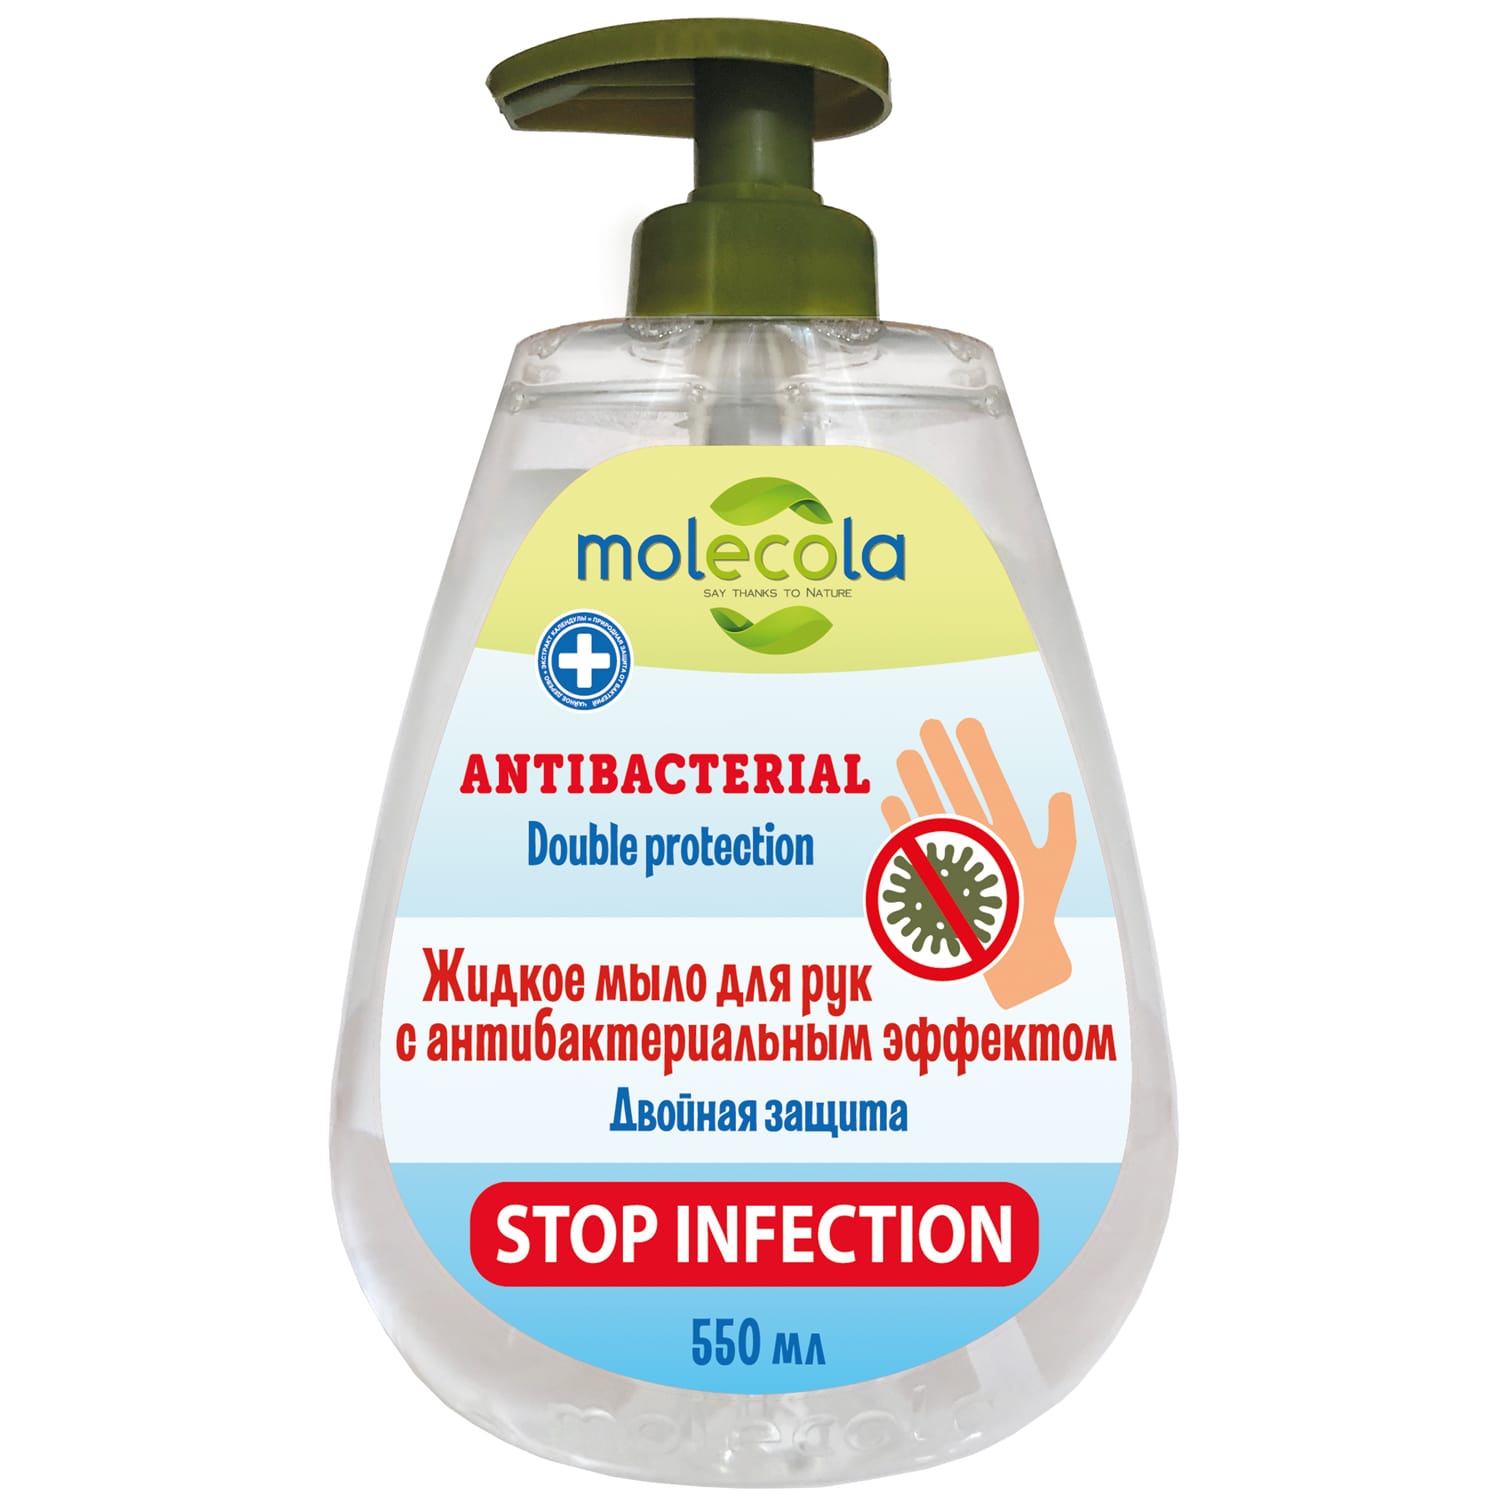 Molecola Жидкое мыло для рук с антибактериальным эффектом, 550 мл (Molecola, Жидкое мыло)